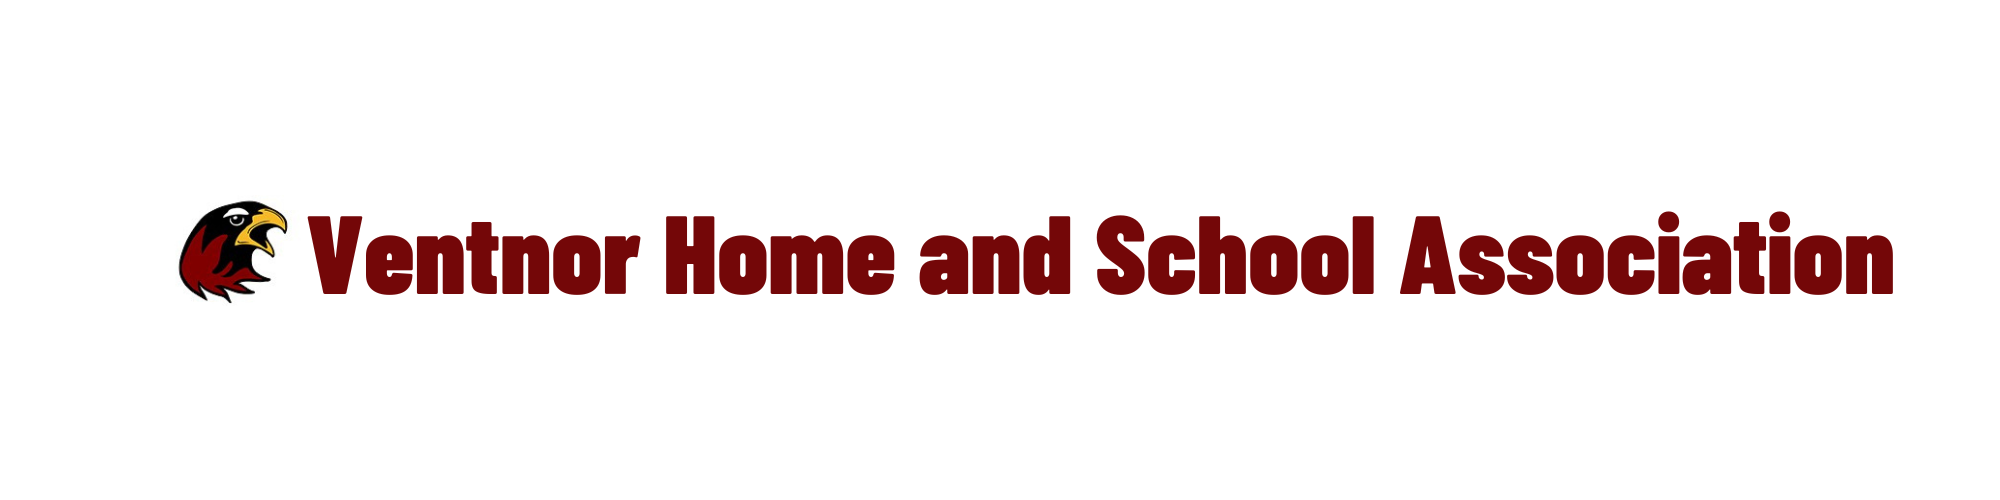 Ventnor Home and School Association